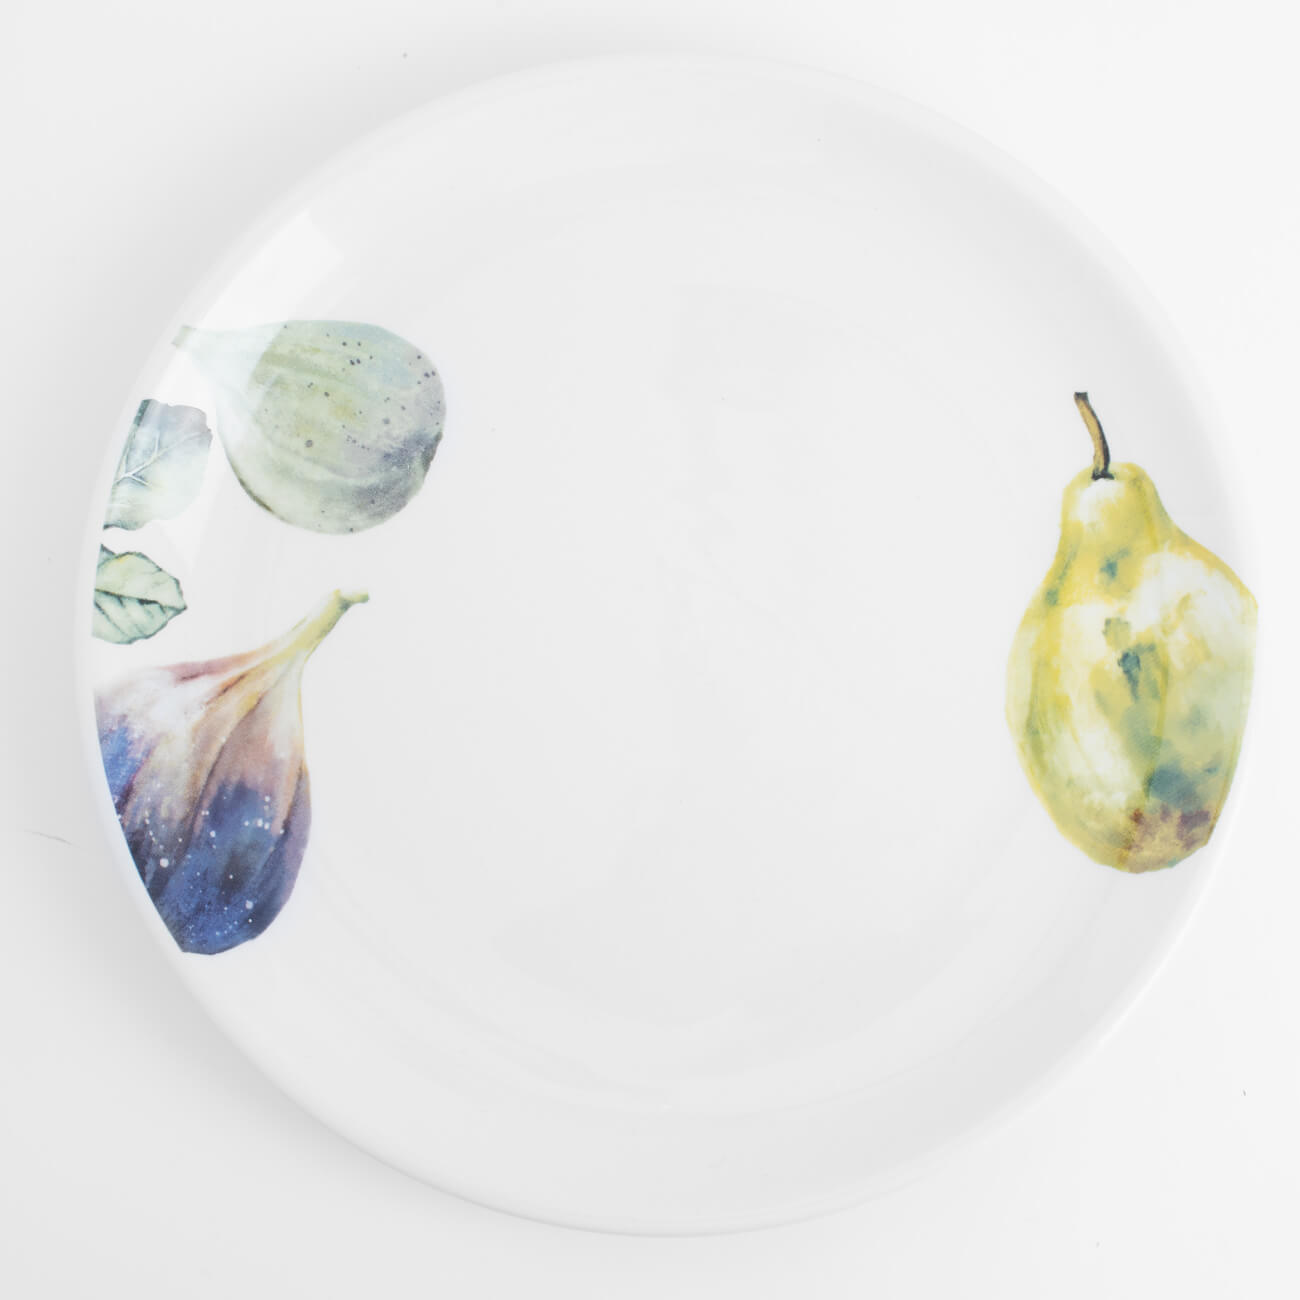 Тарелка закусочная, 21 см, керамика, белая, Инжир и груша, Fruit garden архитектурная керамика мира т5